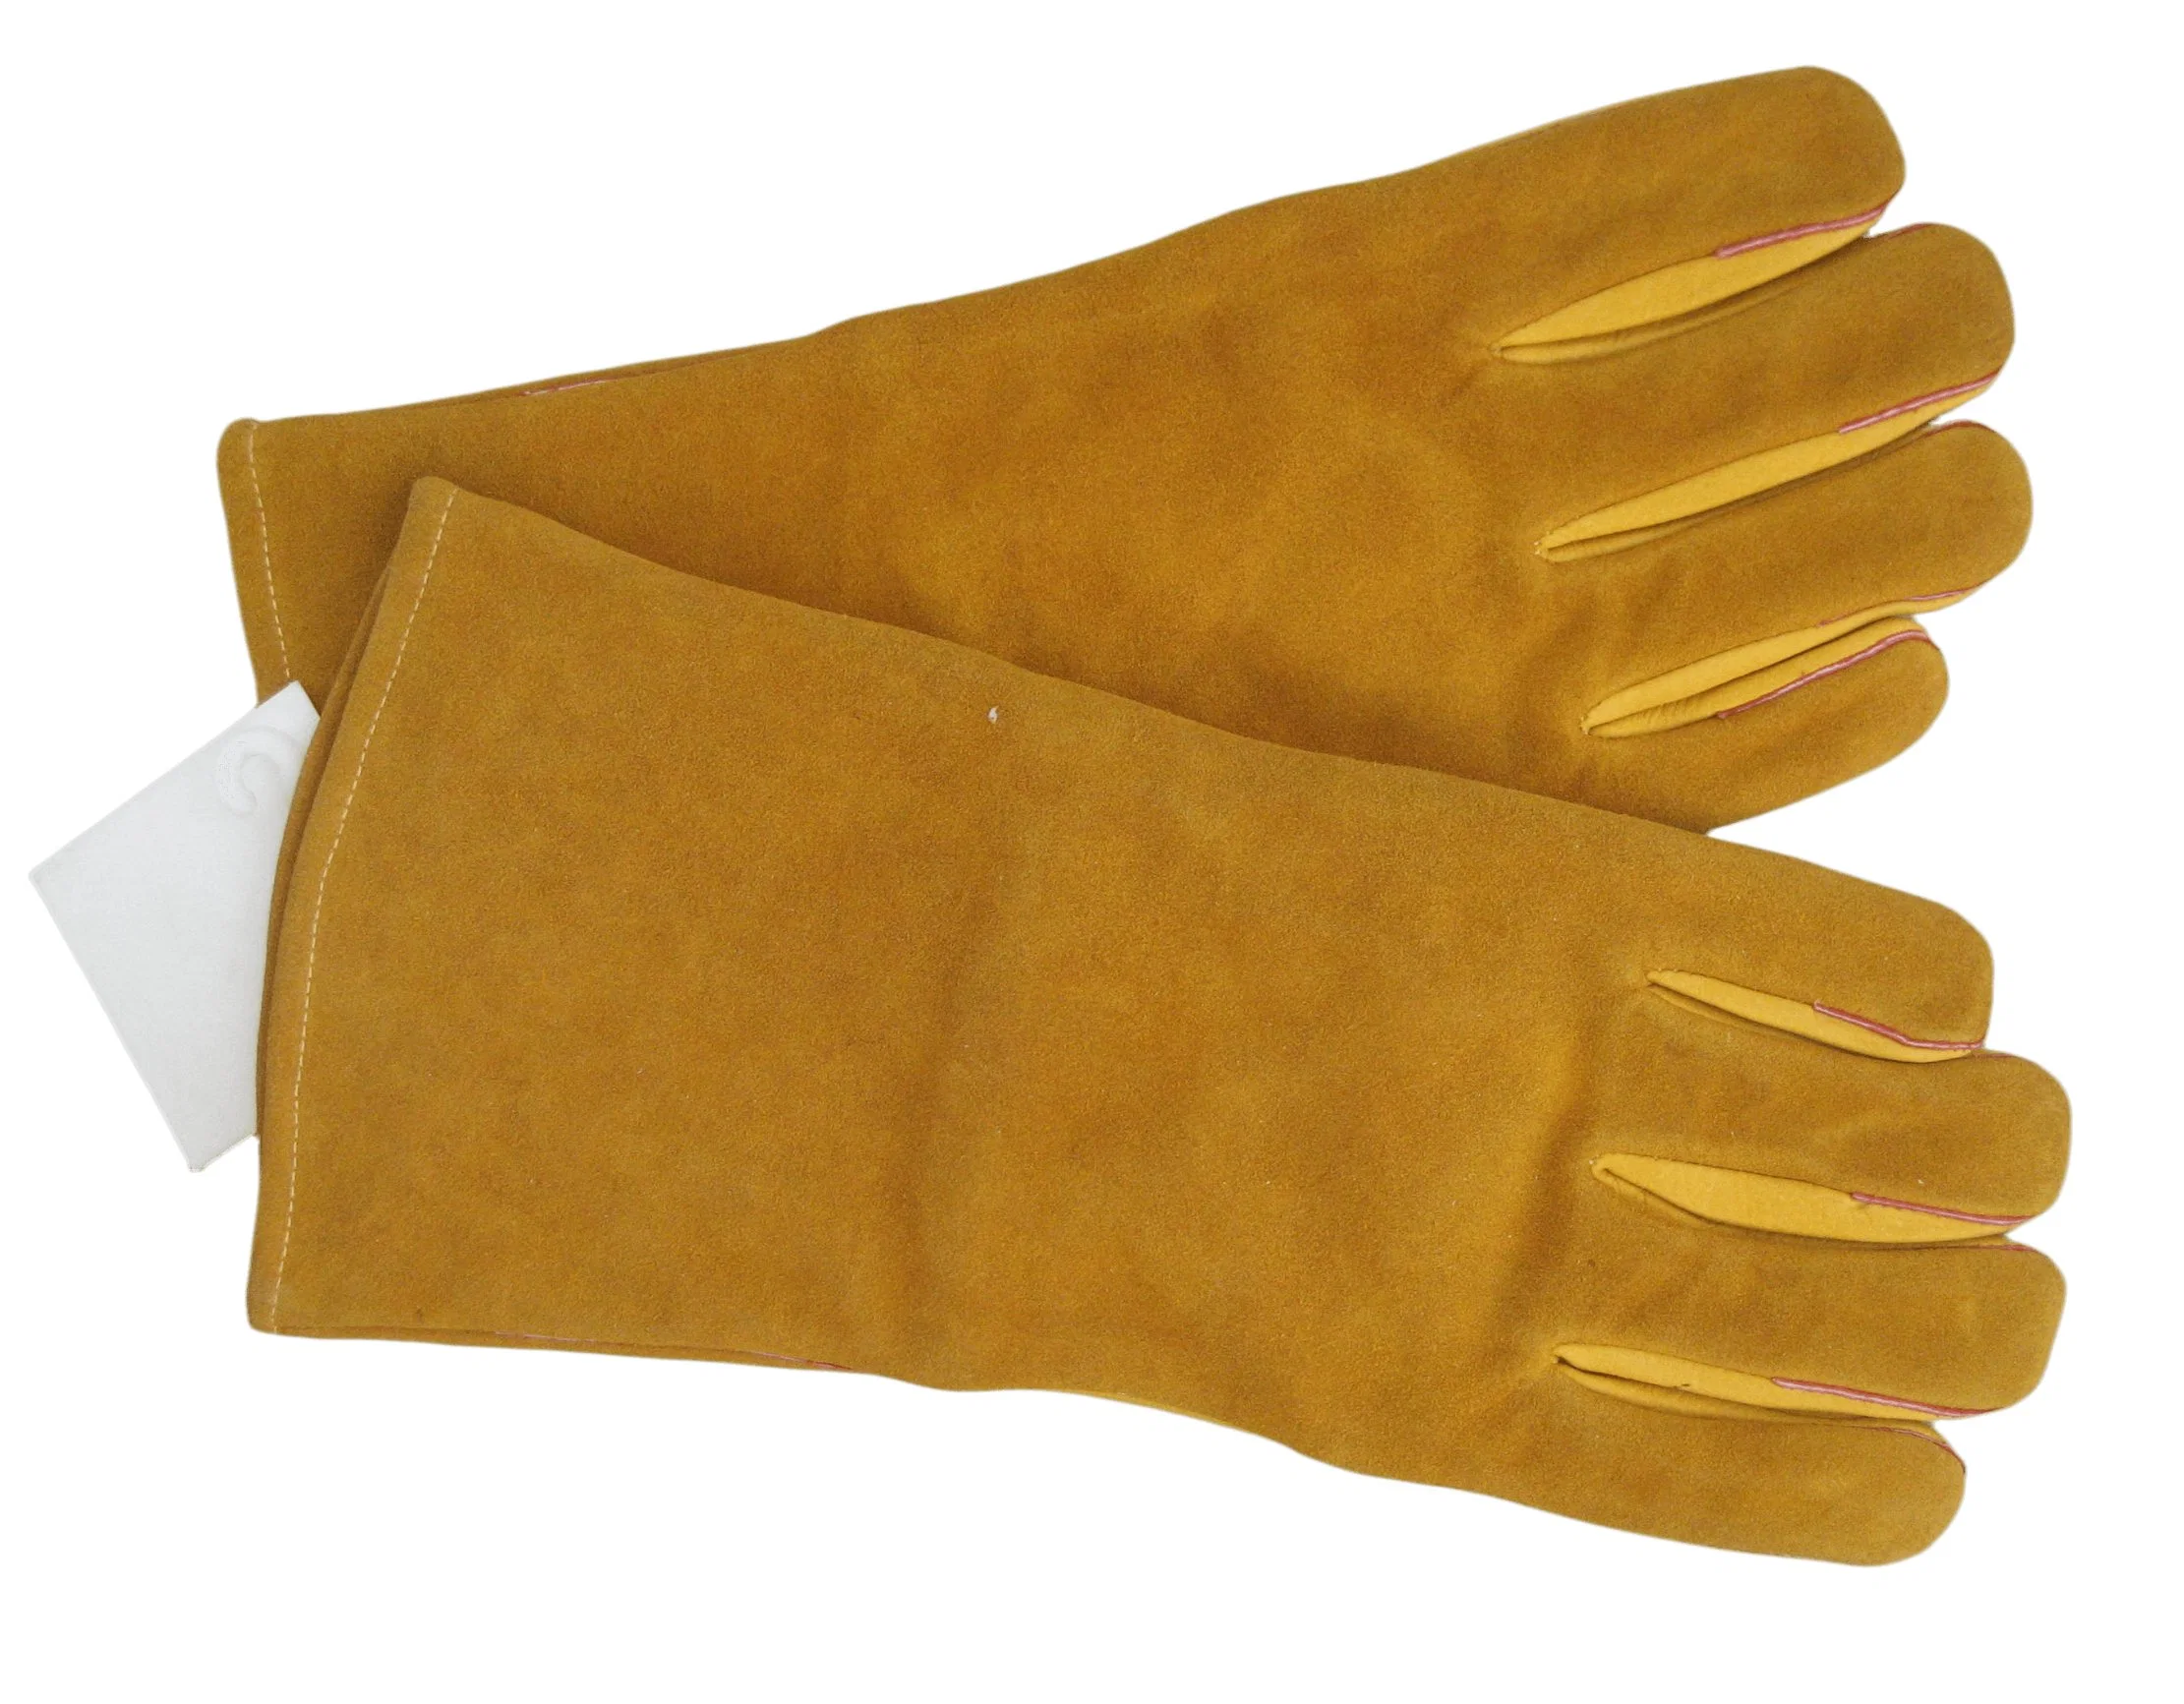 Yello Cuw Grain Leder Handfläche Split Rücken Und Manschettenschweißen Schutzhandschuh